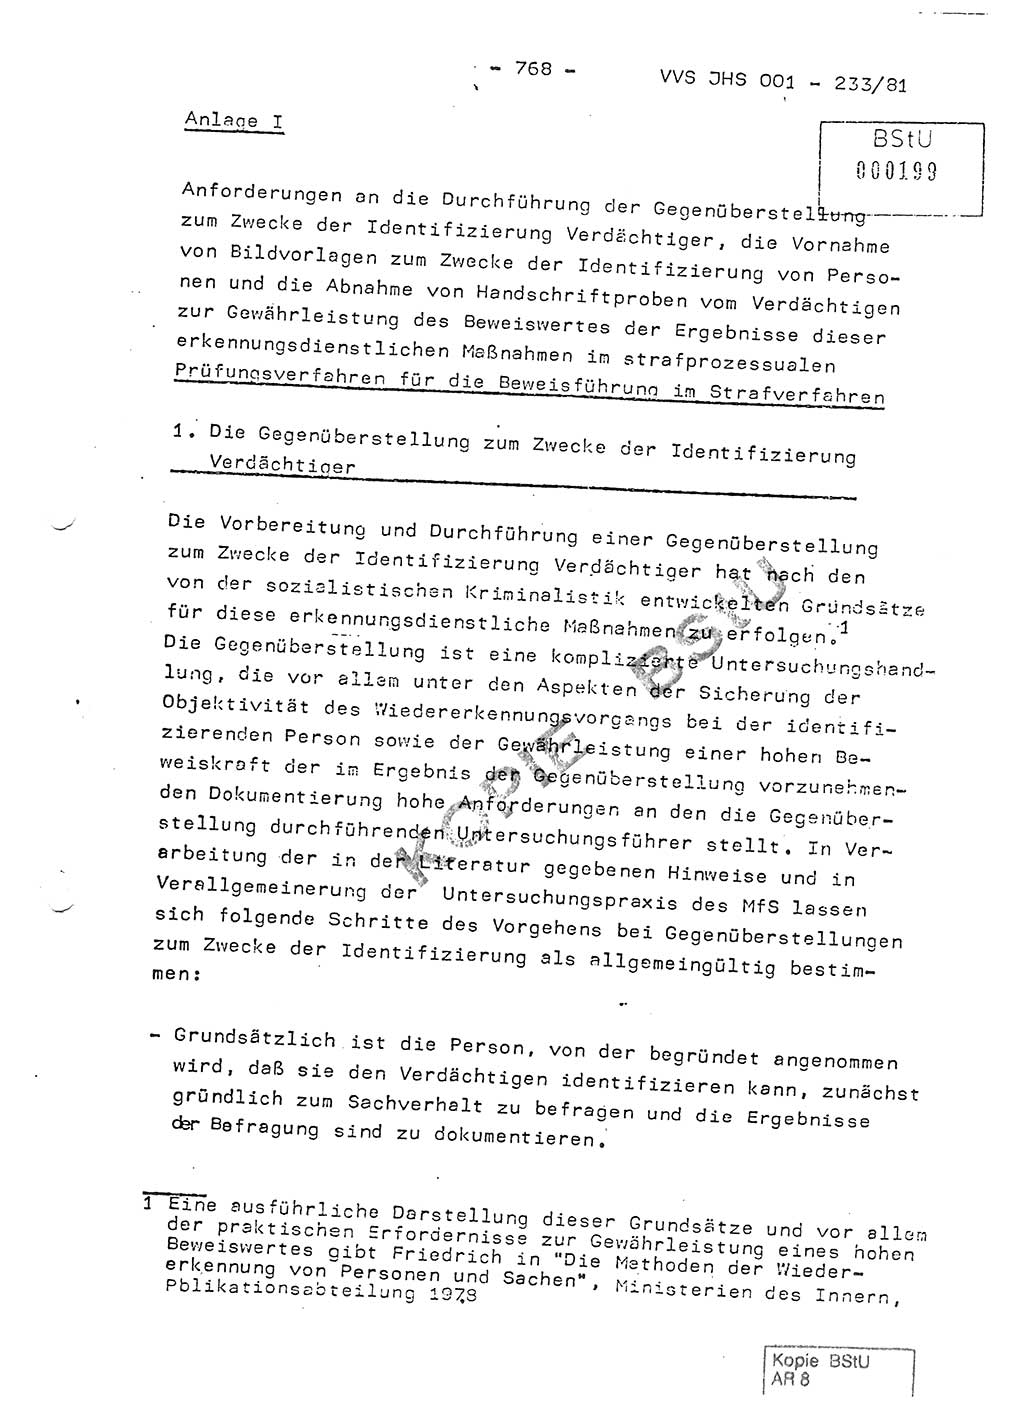 Dissertation Oberstleutnant Horst Zank (JHS), Oberstleutnant Dr. Karl-Heinz Knoblauch (JHS), Oberstleutnant Gustav-Adolf Kowalewski (HA Ⅸ), Oberstleutnant Wolfgang Plötner (HA Ⅸ), Ministerium für Staatssicherheit (MfS) [Deutsche Demokratische Republik (DDR)], Juristische Hochschule (JHS), Vertrauliche Verschlußsache (VVS) o001-233/81, Potsdam 1981, Blatt 768 (Diss. MfS DDR JHS VVS o001-233/81 1981, Bl. 768)